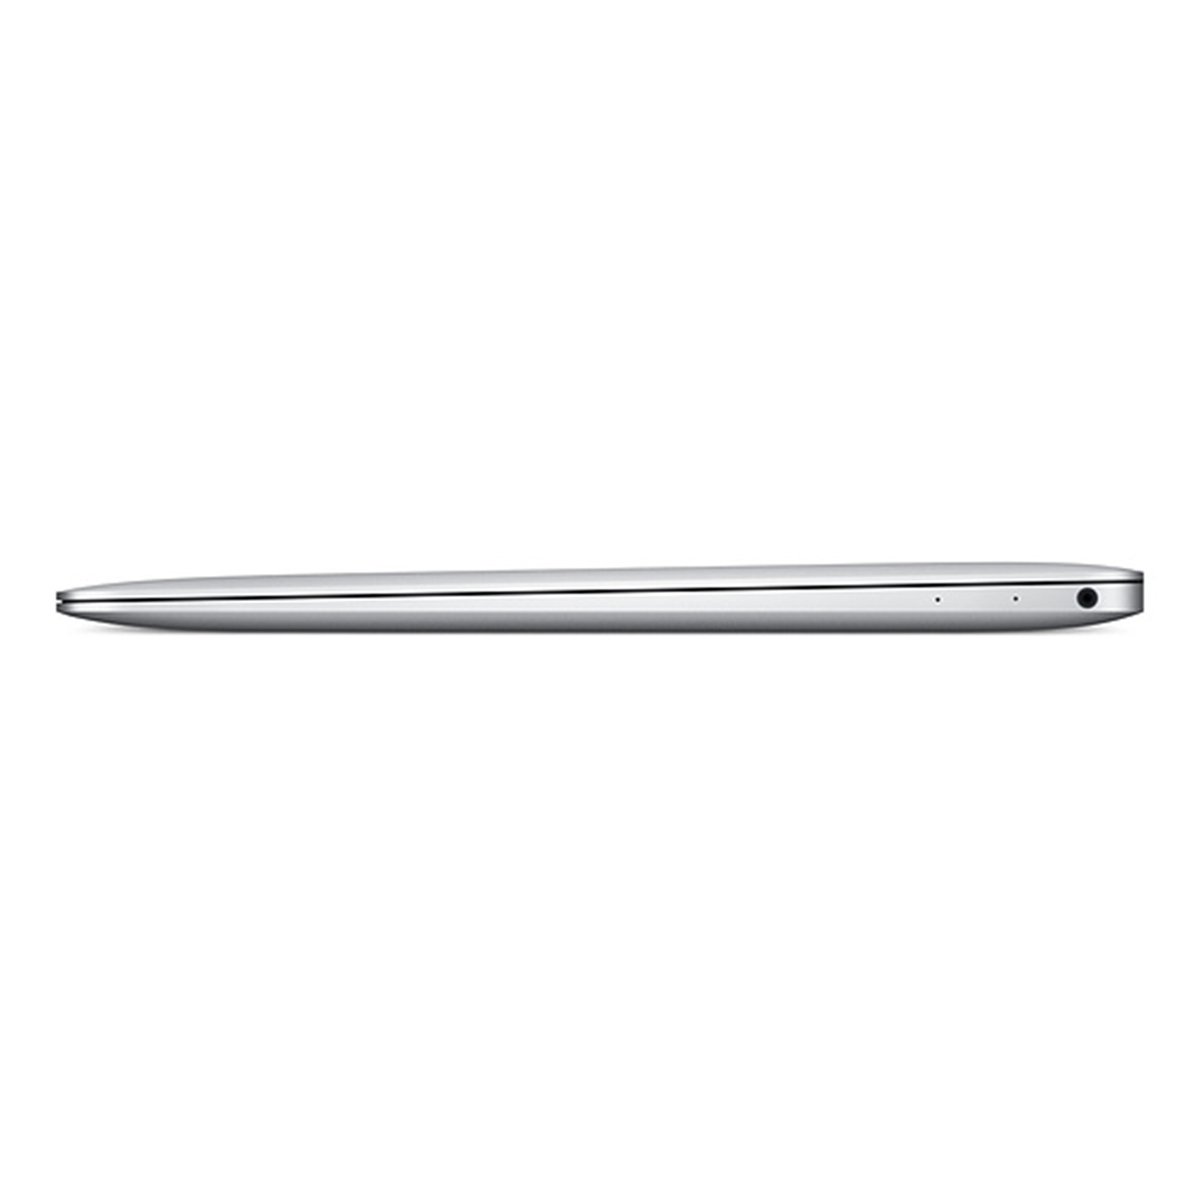 Apple Laptop 12 inches LED Laptop Silver (MNYJ2ZS/A) - Intel i5 1.3 GHz, 8 GB RAM, 512 GB Hybrid (HDD/SDD), English Keyboard